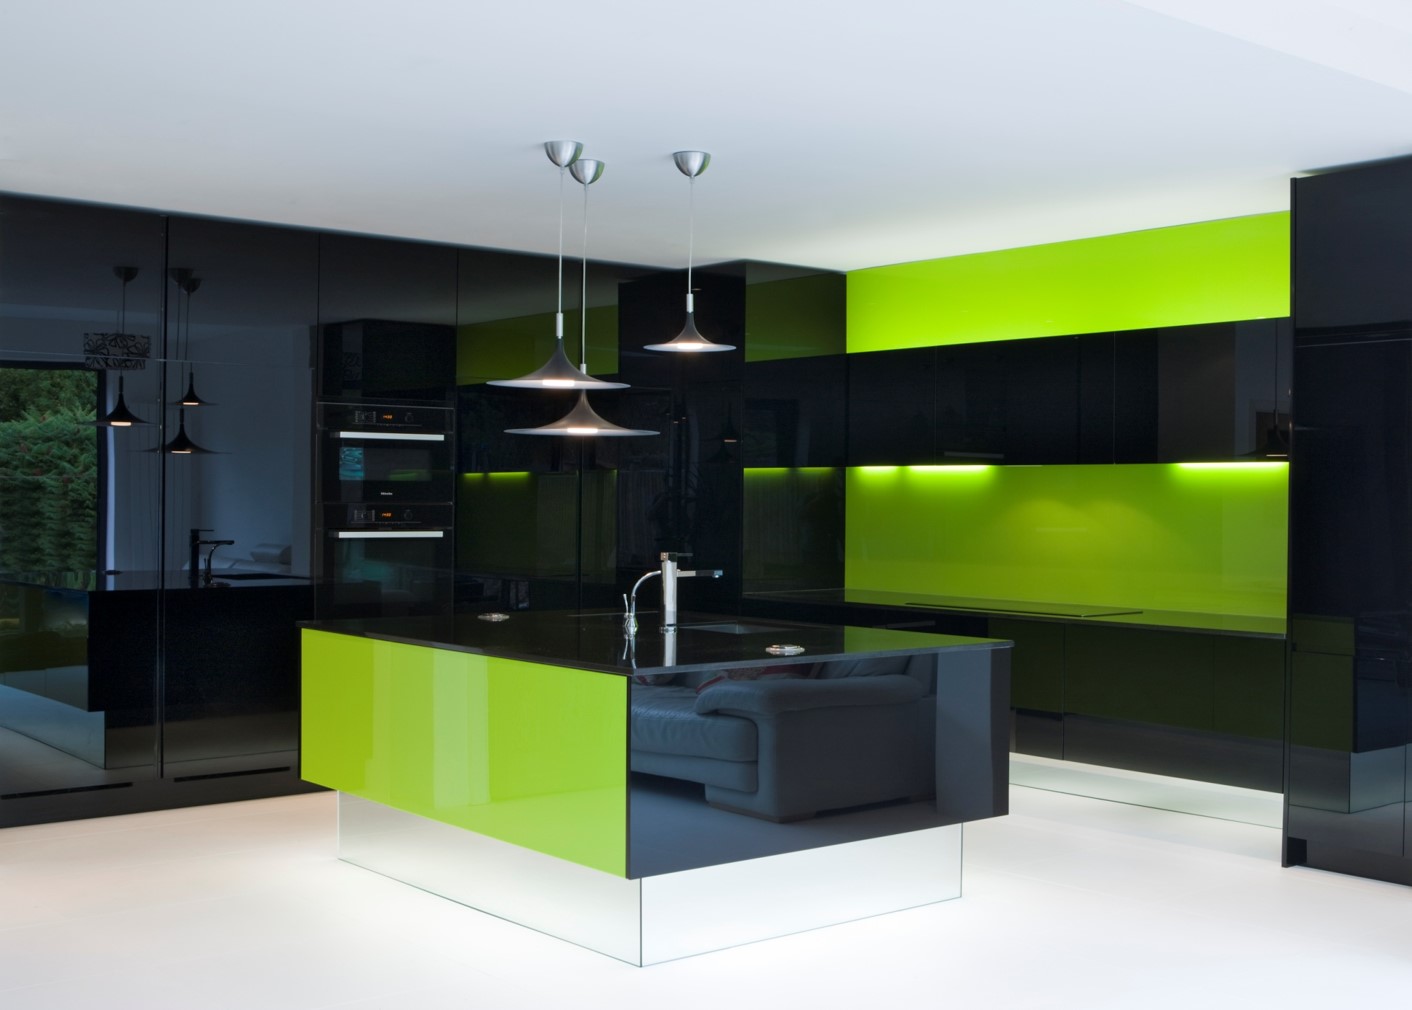 Resin Kitchens & Corian Kitchens - Gallery Kitchen Design & Installation.